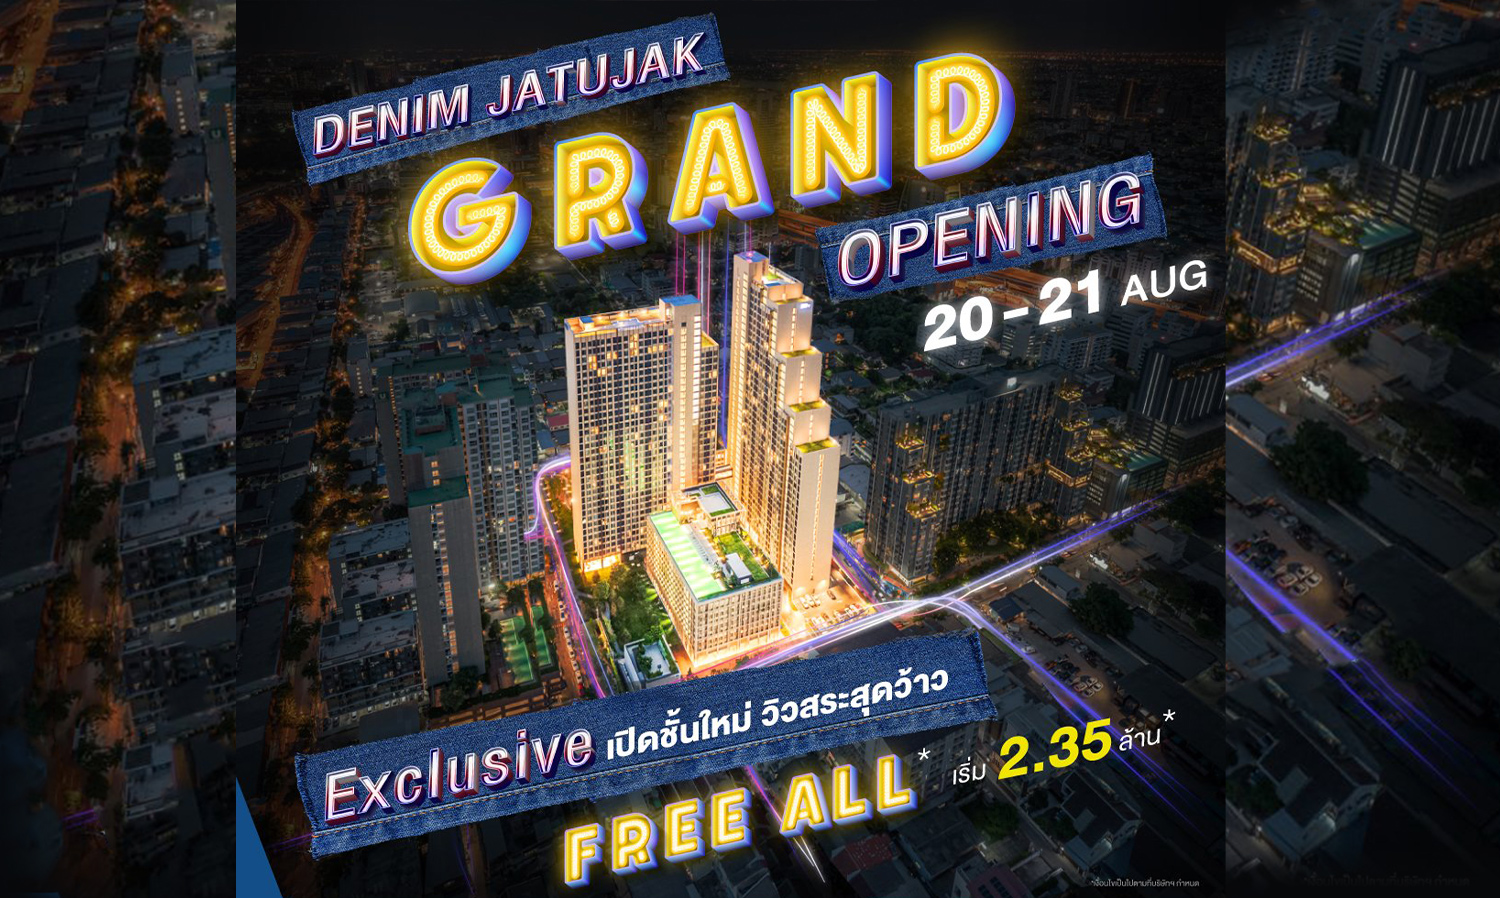 แกรนด์ ยูนิตี้ เตรียมจัด Grand Opening เดนิม จตุจักร เปิดจองยูนิตสุดเอ็กซ์คลูซีฟ 20 - 21 สิงหาคมนี้ เท่านั้น